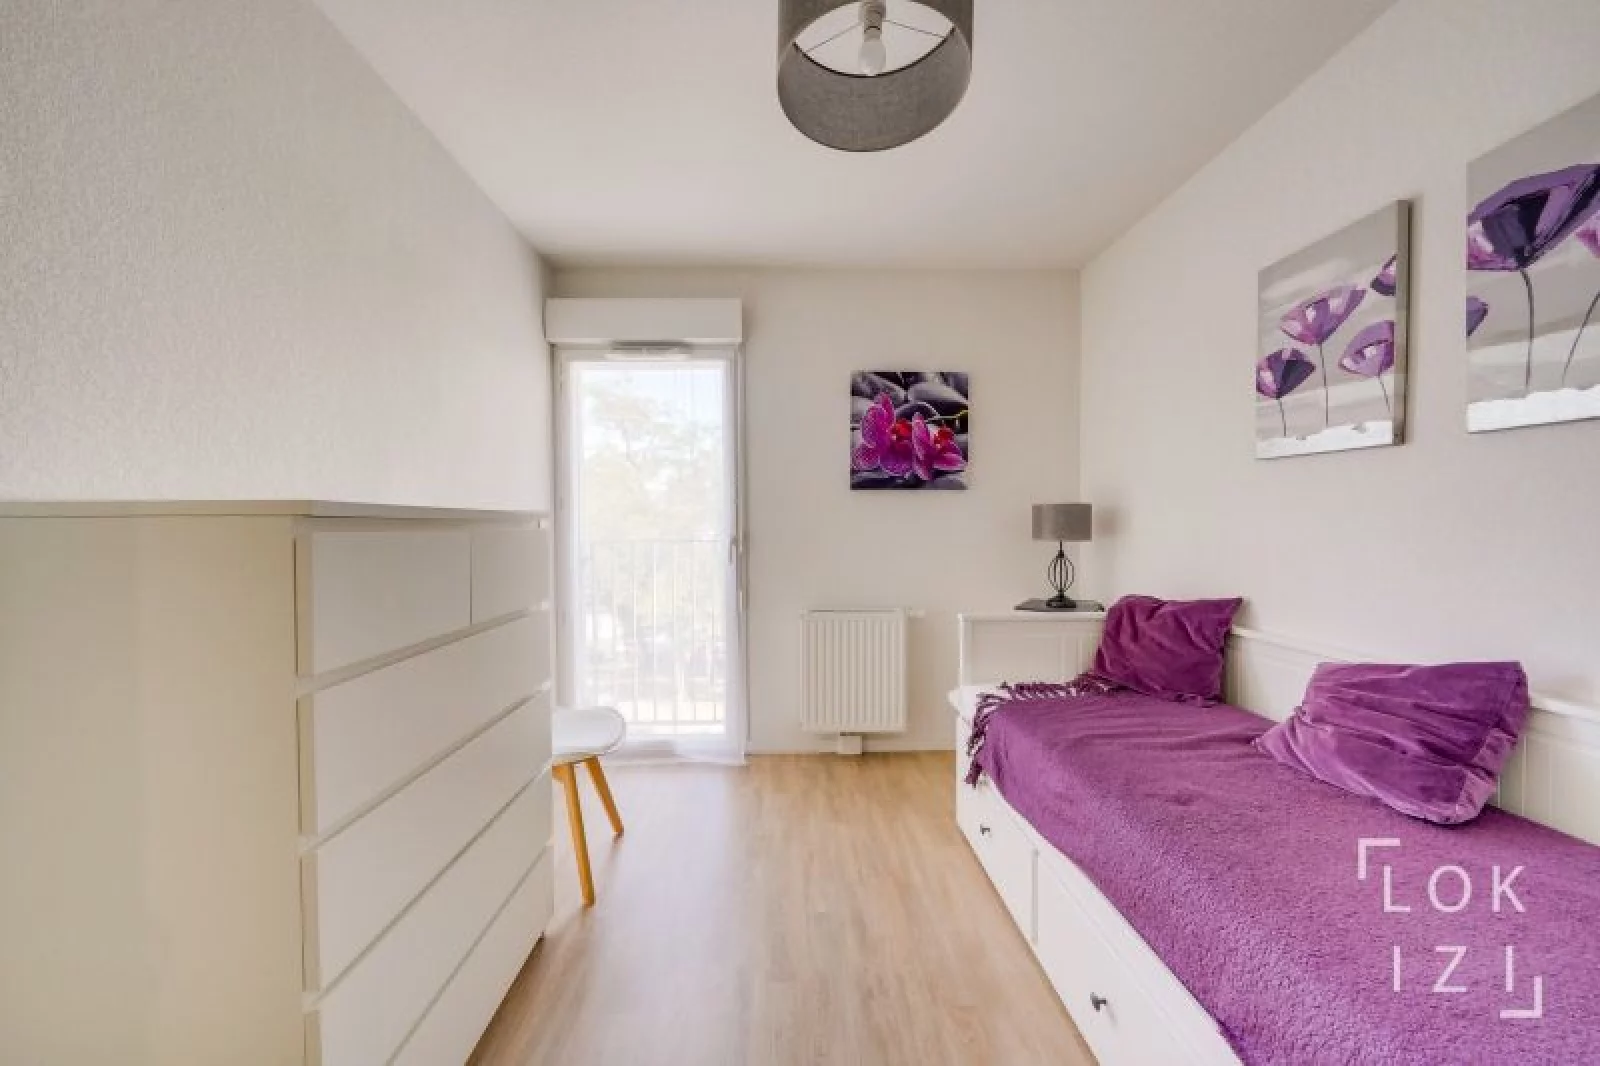 Location appartement meublé 3 pièces 73m² (Bordeaux nord - Lormont)